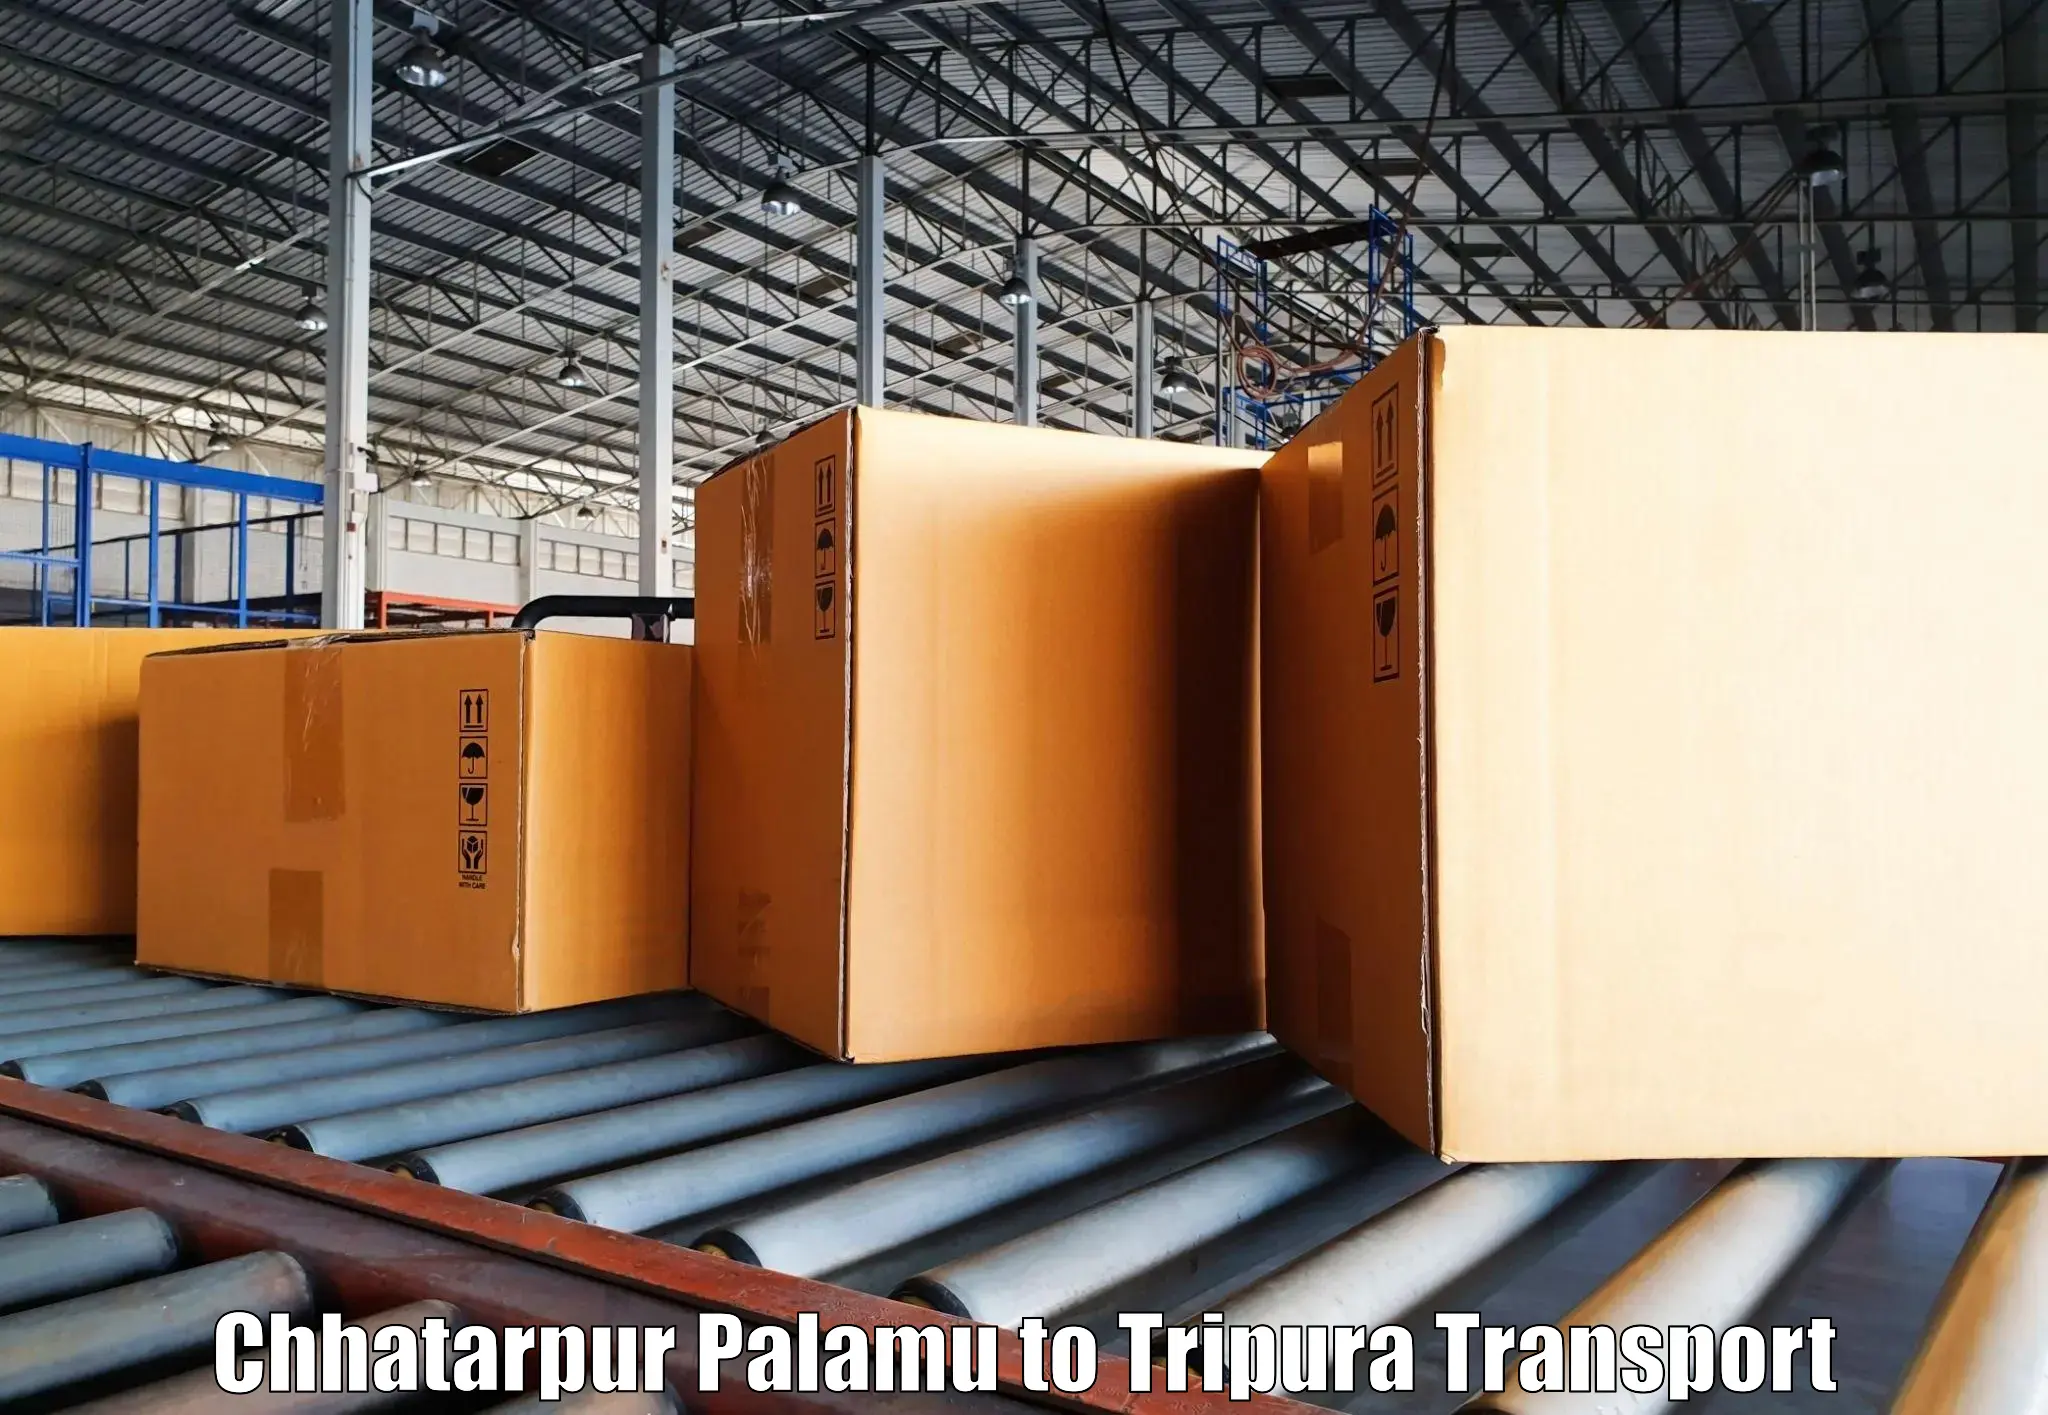 Lorry transport service Chhatarpur Palamu to Dharmanagar